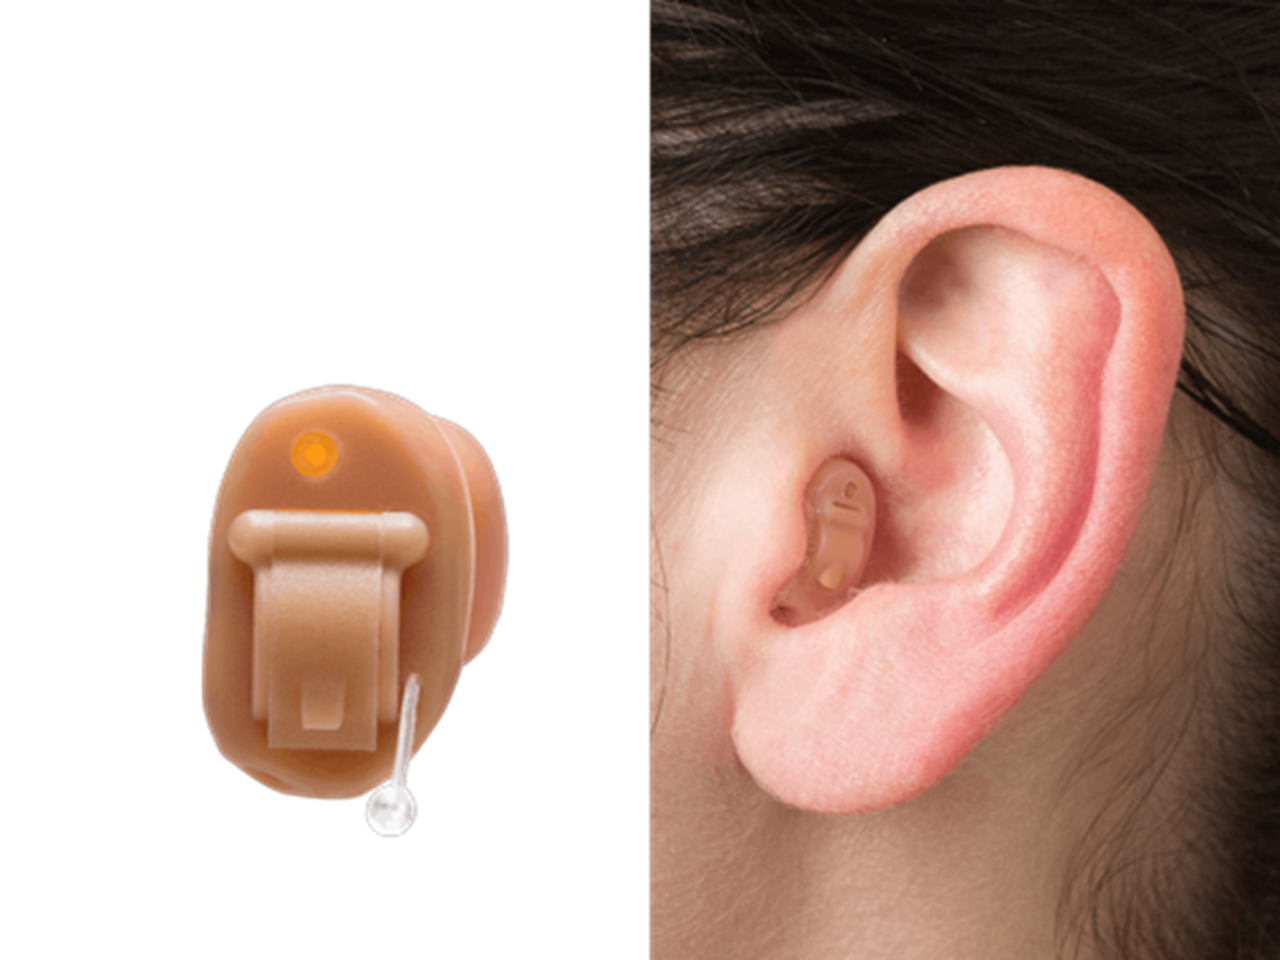 Come scegliere un apparecchio acustico: tipologie e problemi uditivi